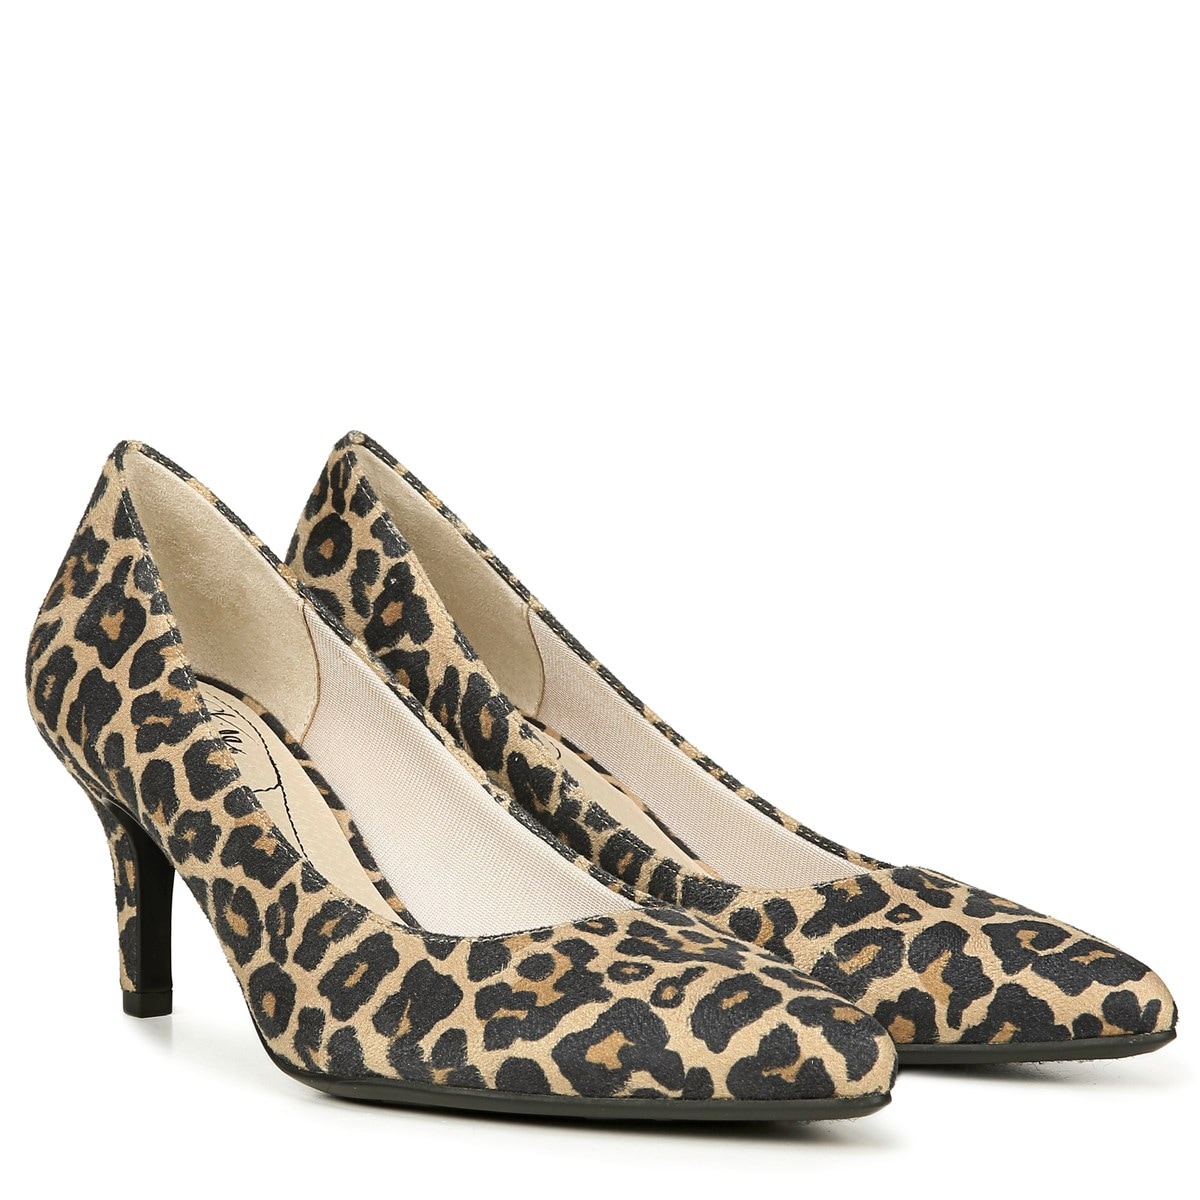 mia leopard shoes